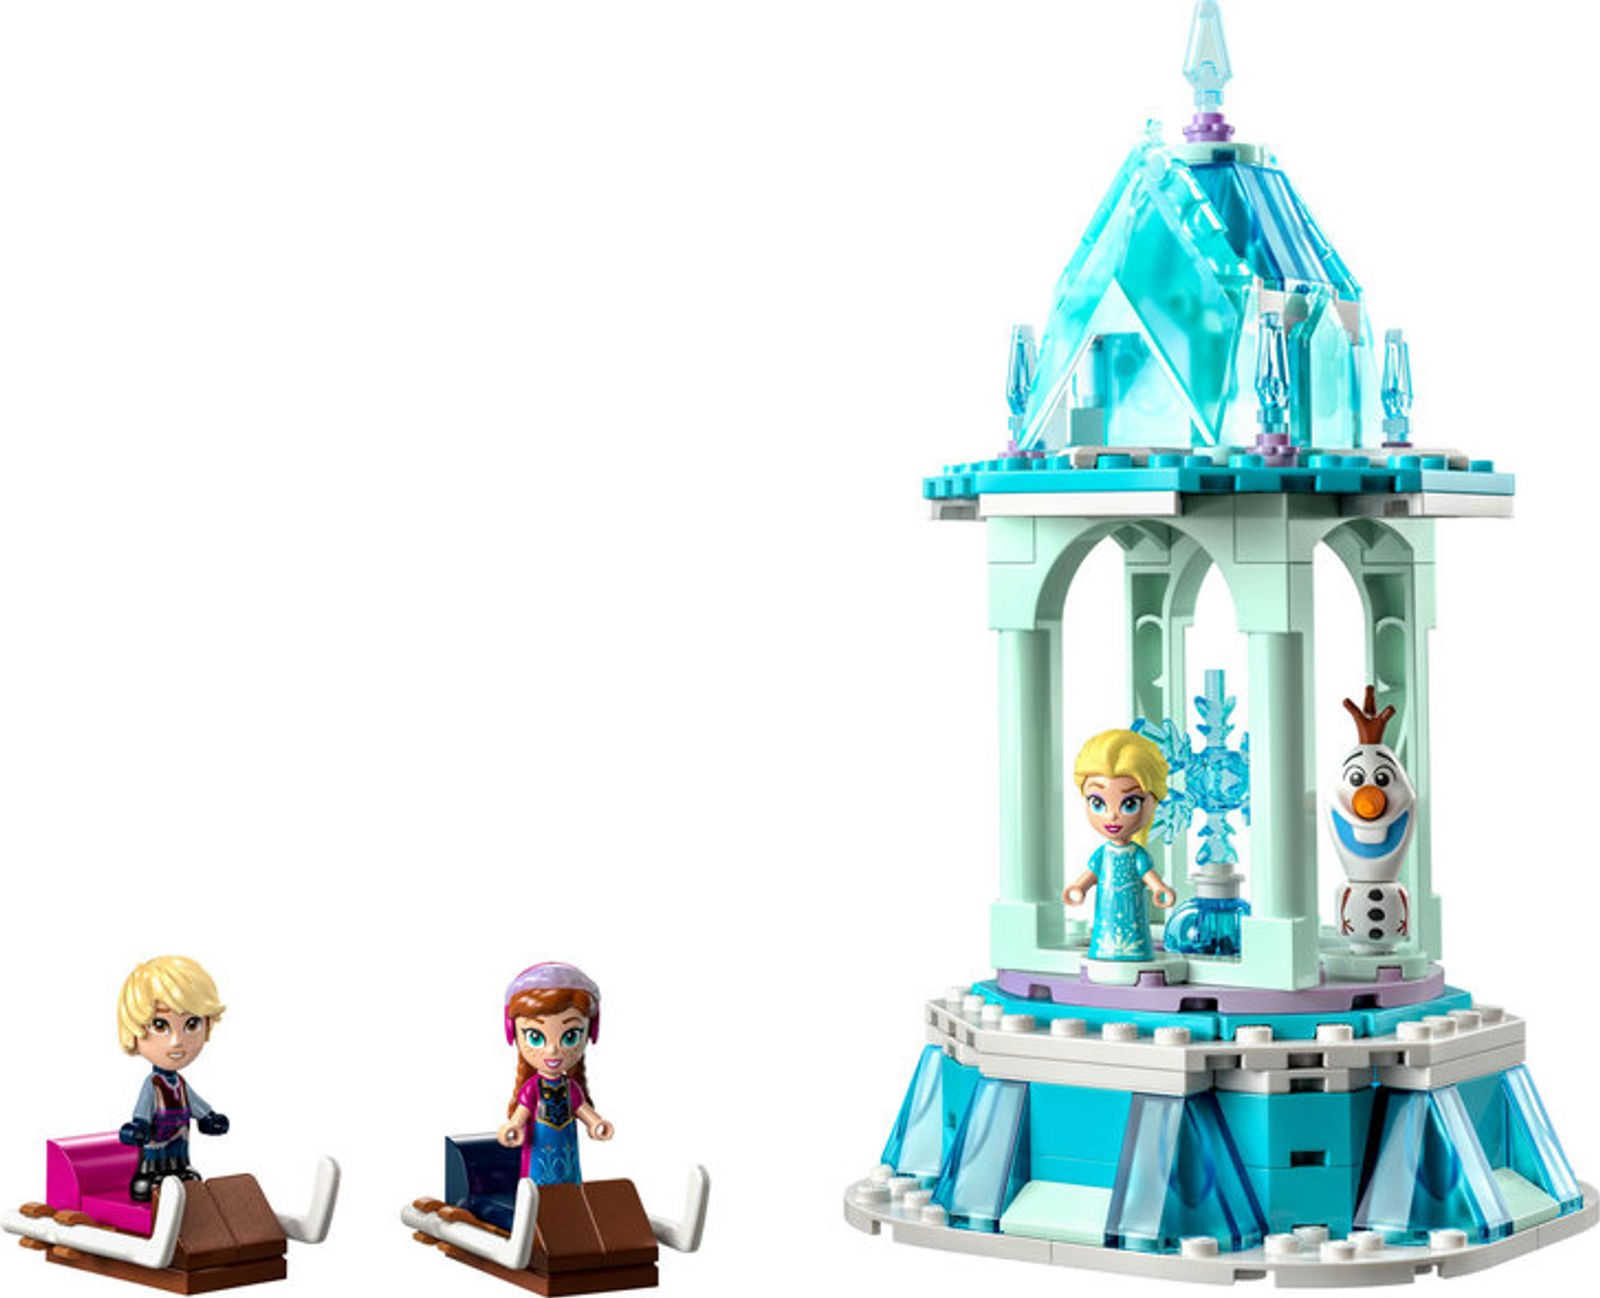 LEGO® 43218 - Disney Annas und Elsas magisches Karussell (175 Teile)